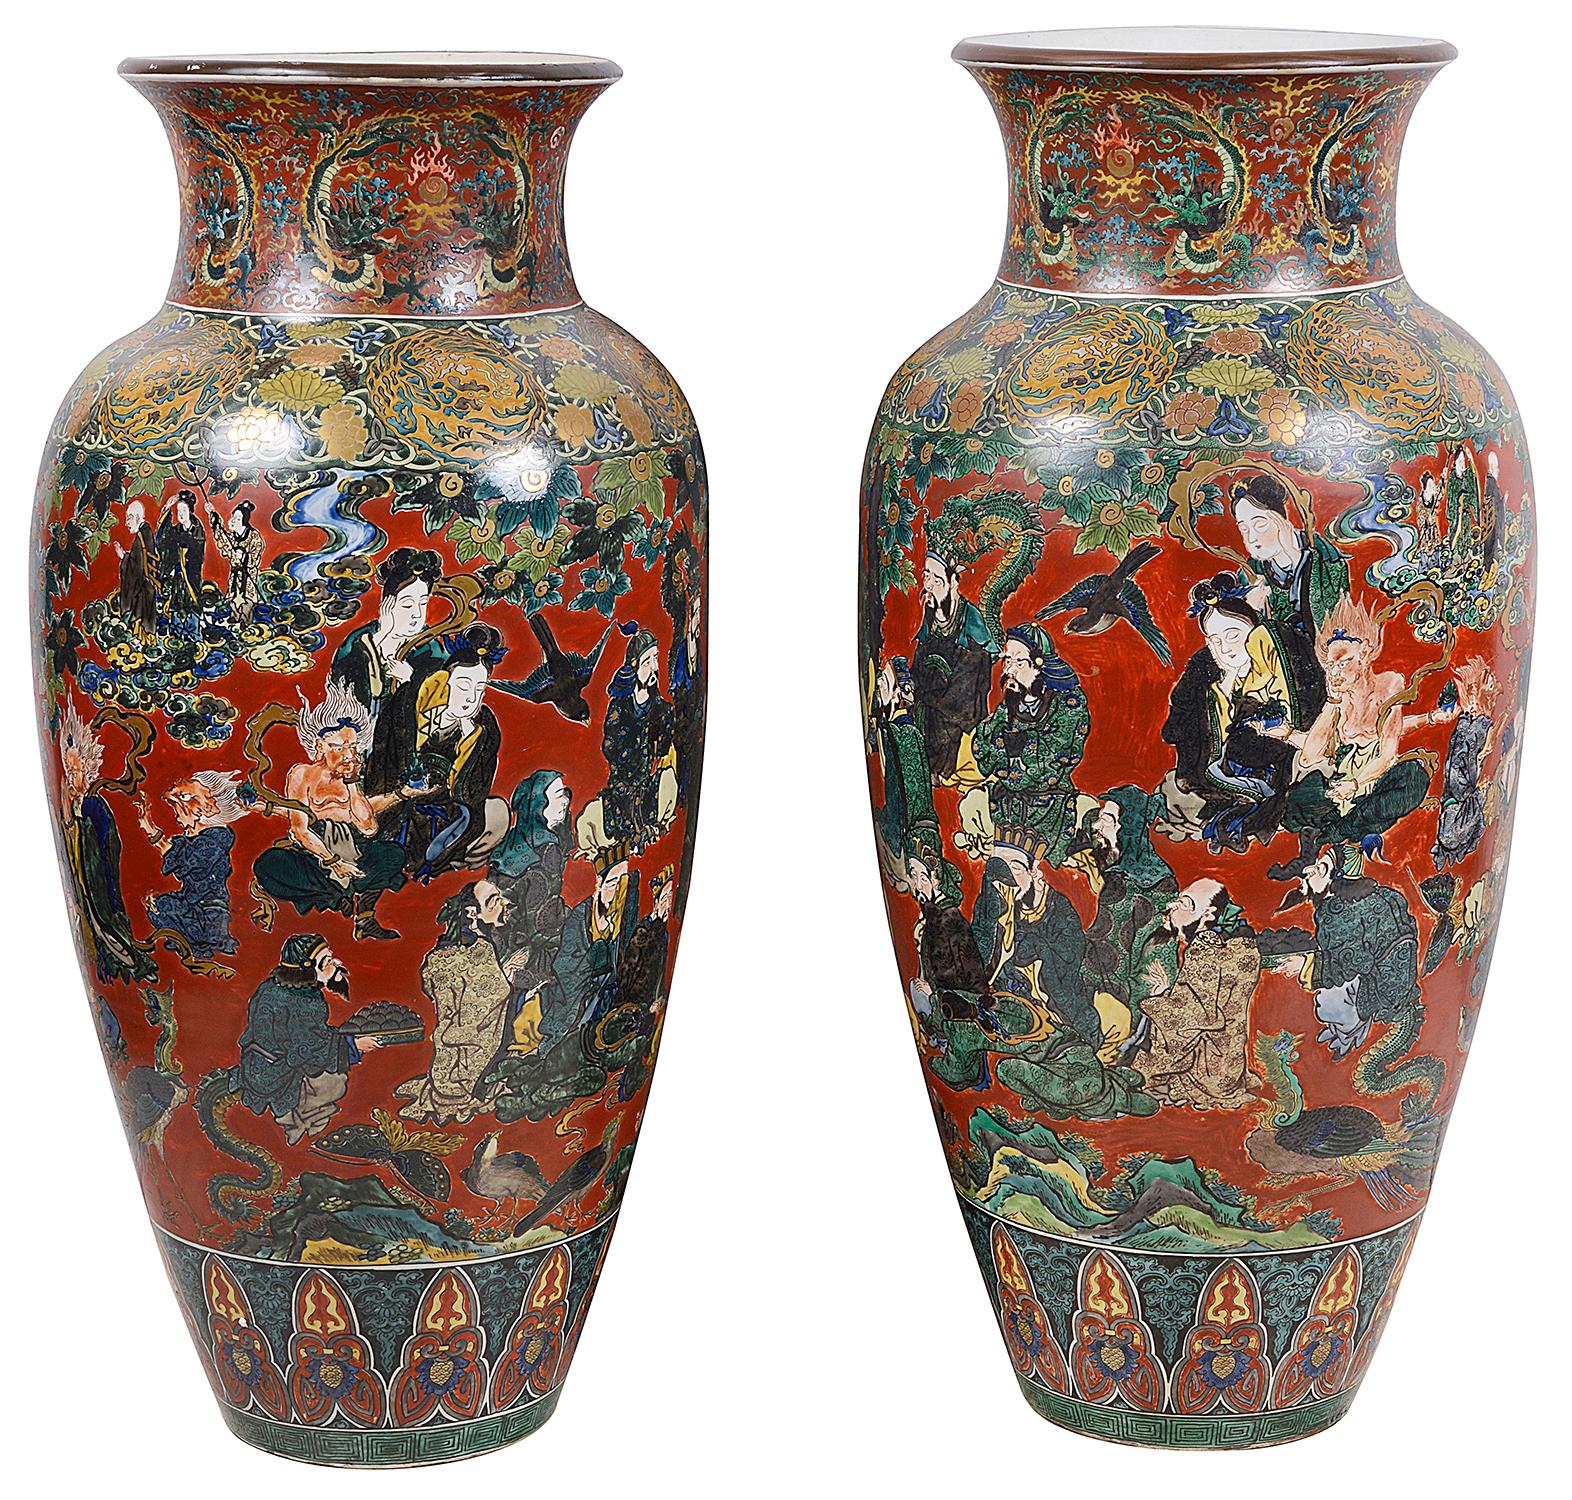 Une magnifique paire de vases en porcelaine Kutani de la période Meiji (1868-1912). Magnifiques images peintes à la main d'assistants se réunissant le matin, décorées de motifs classiques en haut et en bas, signées sur les bases. Taille : 100cm